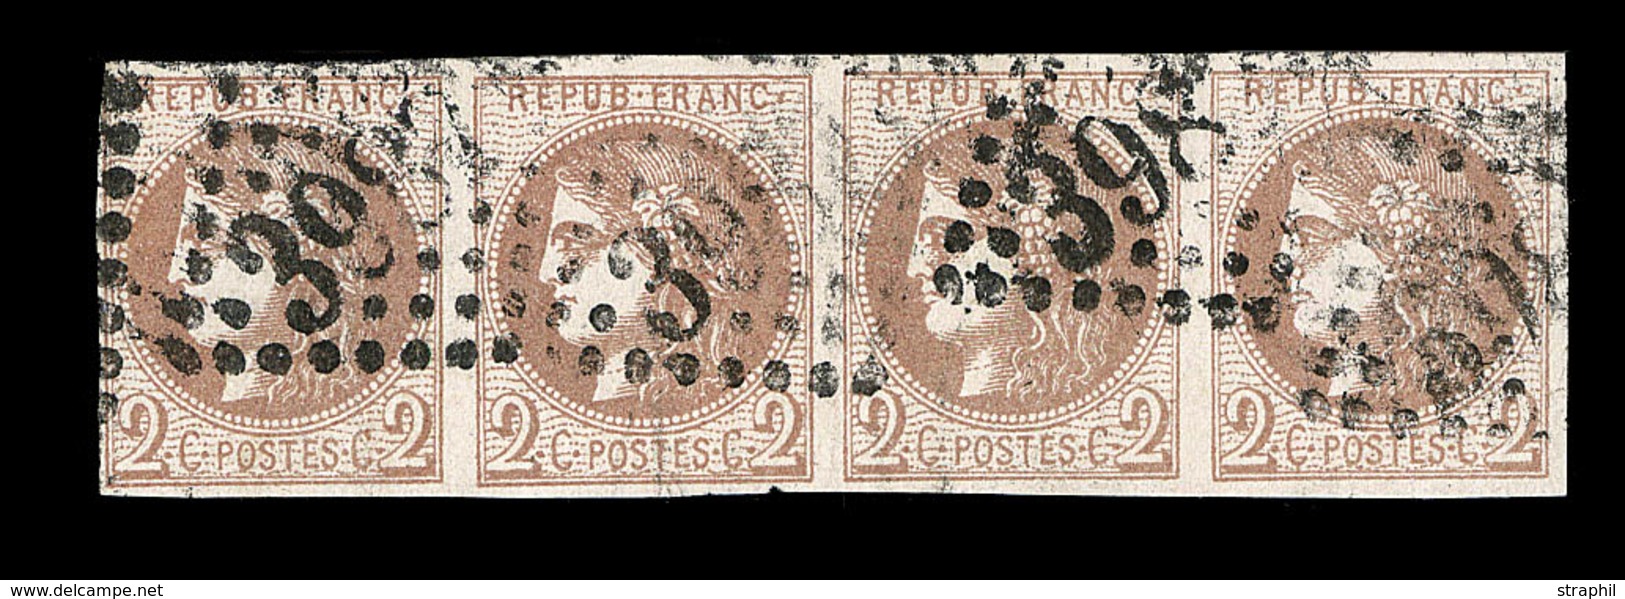 O EMISSION DE BORDEAUX  - O - N°40Bc - 2c Chocolat Foncé - Bde De 4 - Obl. GC 3987 - Petite Froissure Sans Importance -  - 1870 Ausgabe Bordeaux